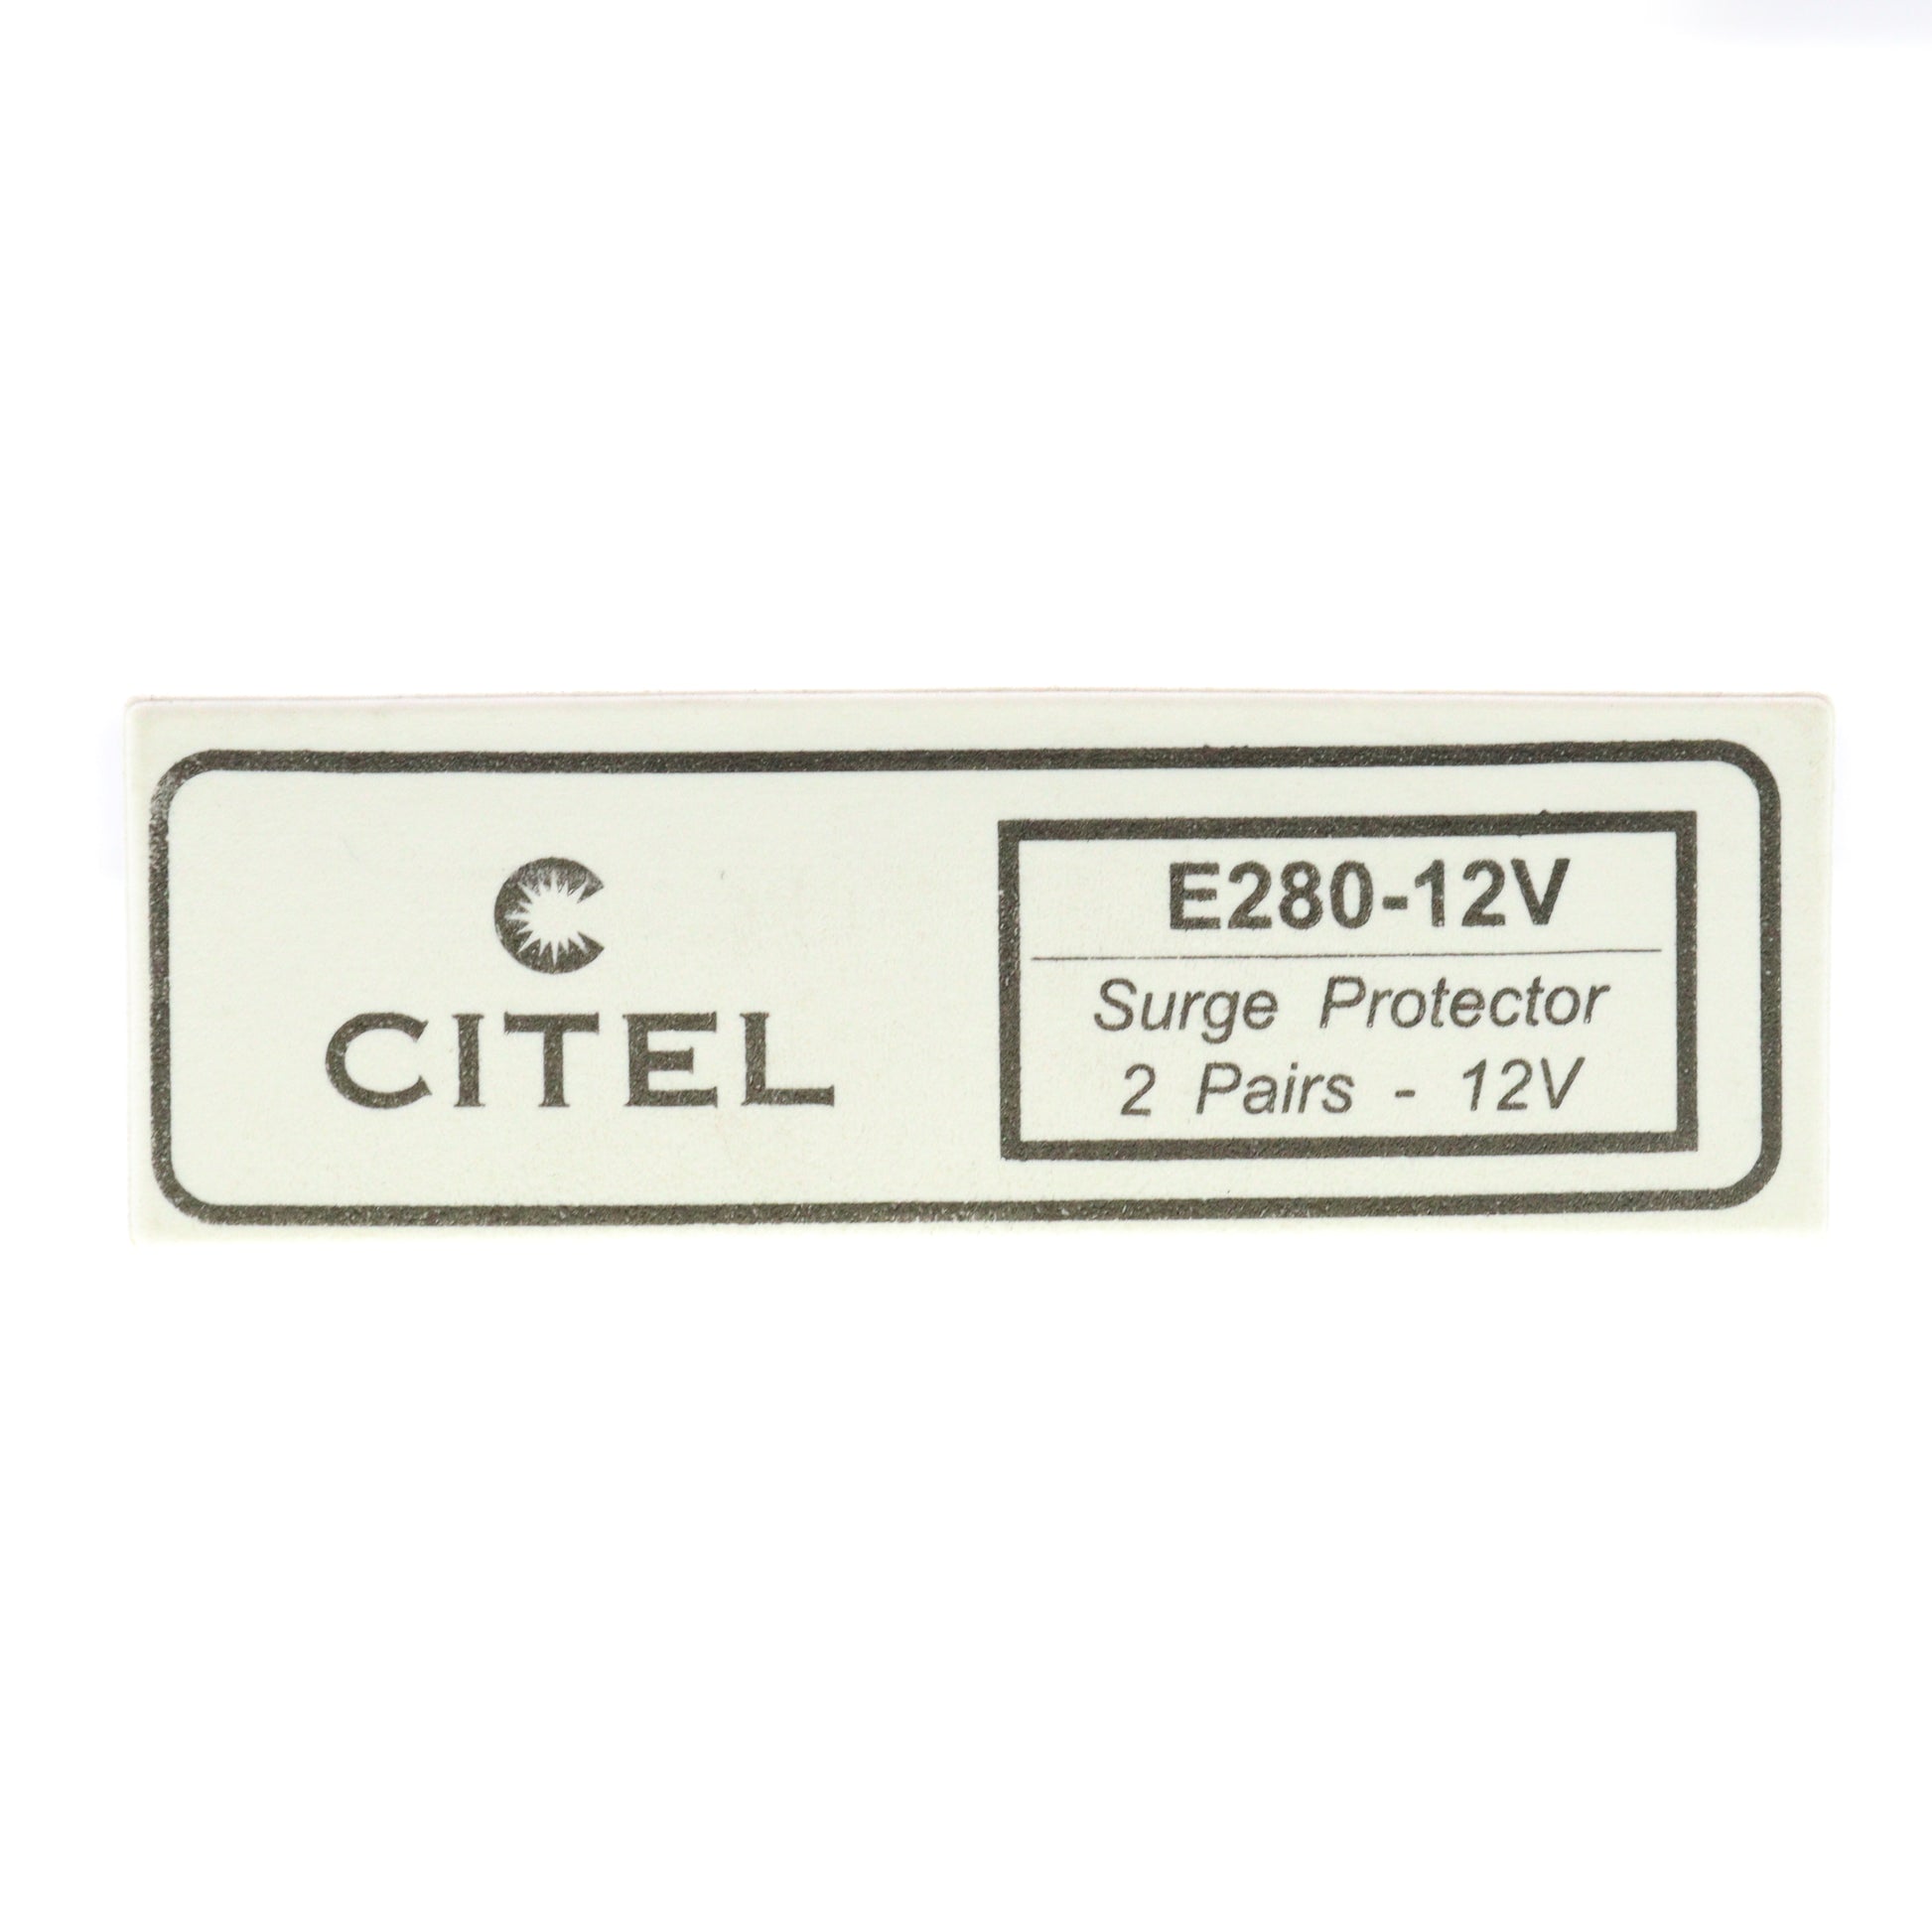 Citel E280-12V